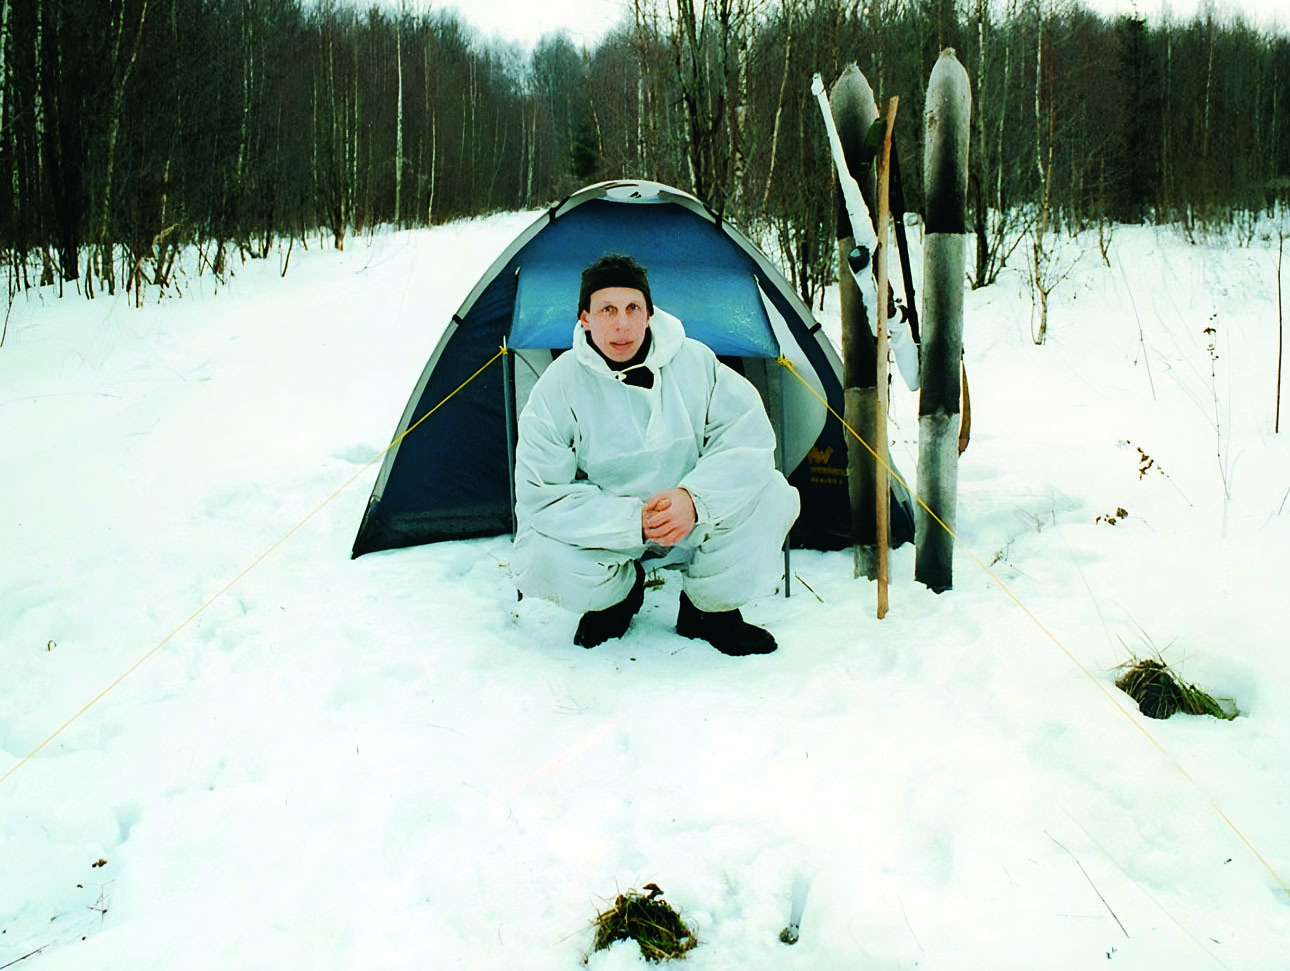 Изображение Зимой теплая одежда и хороший спальный мешок играют решающую роль, тем более если приходится ночевать в снегу. Фото автора. 